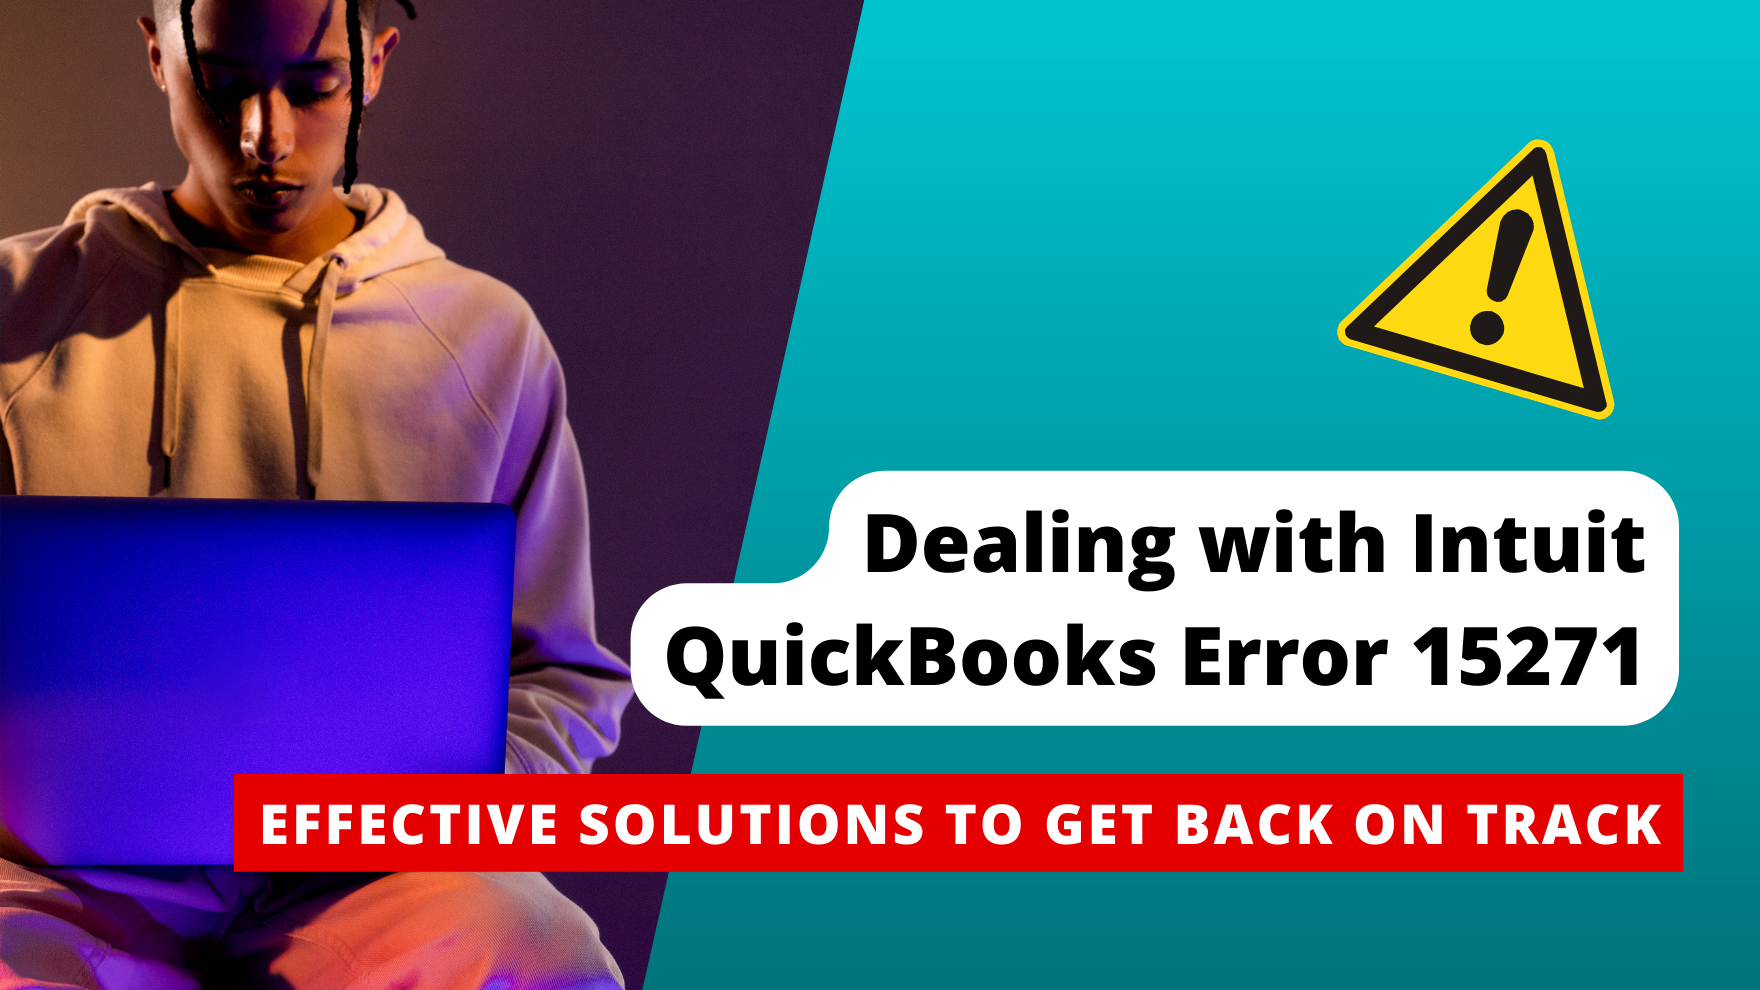 Intuit QuickBooks Error 15271